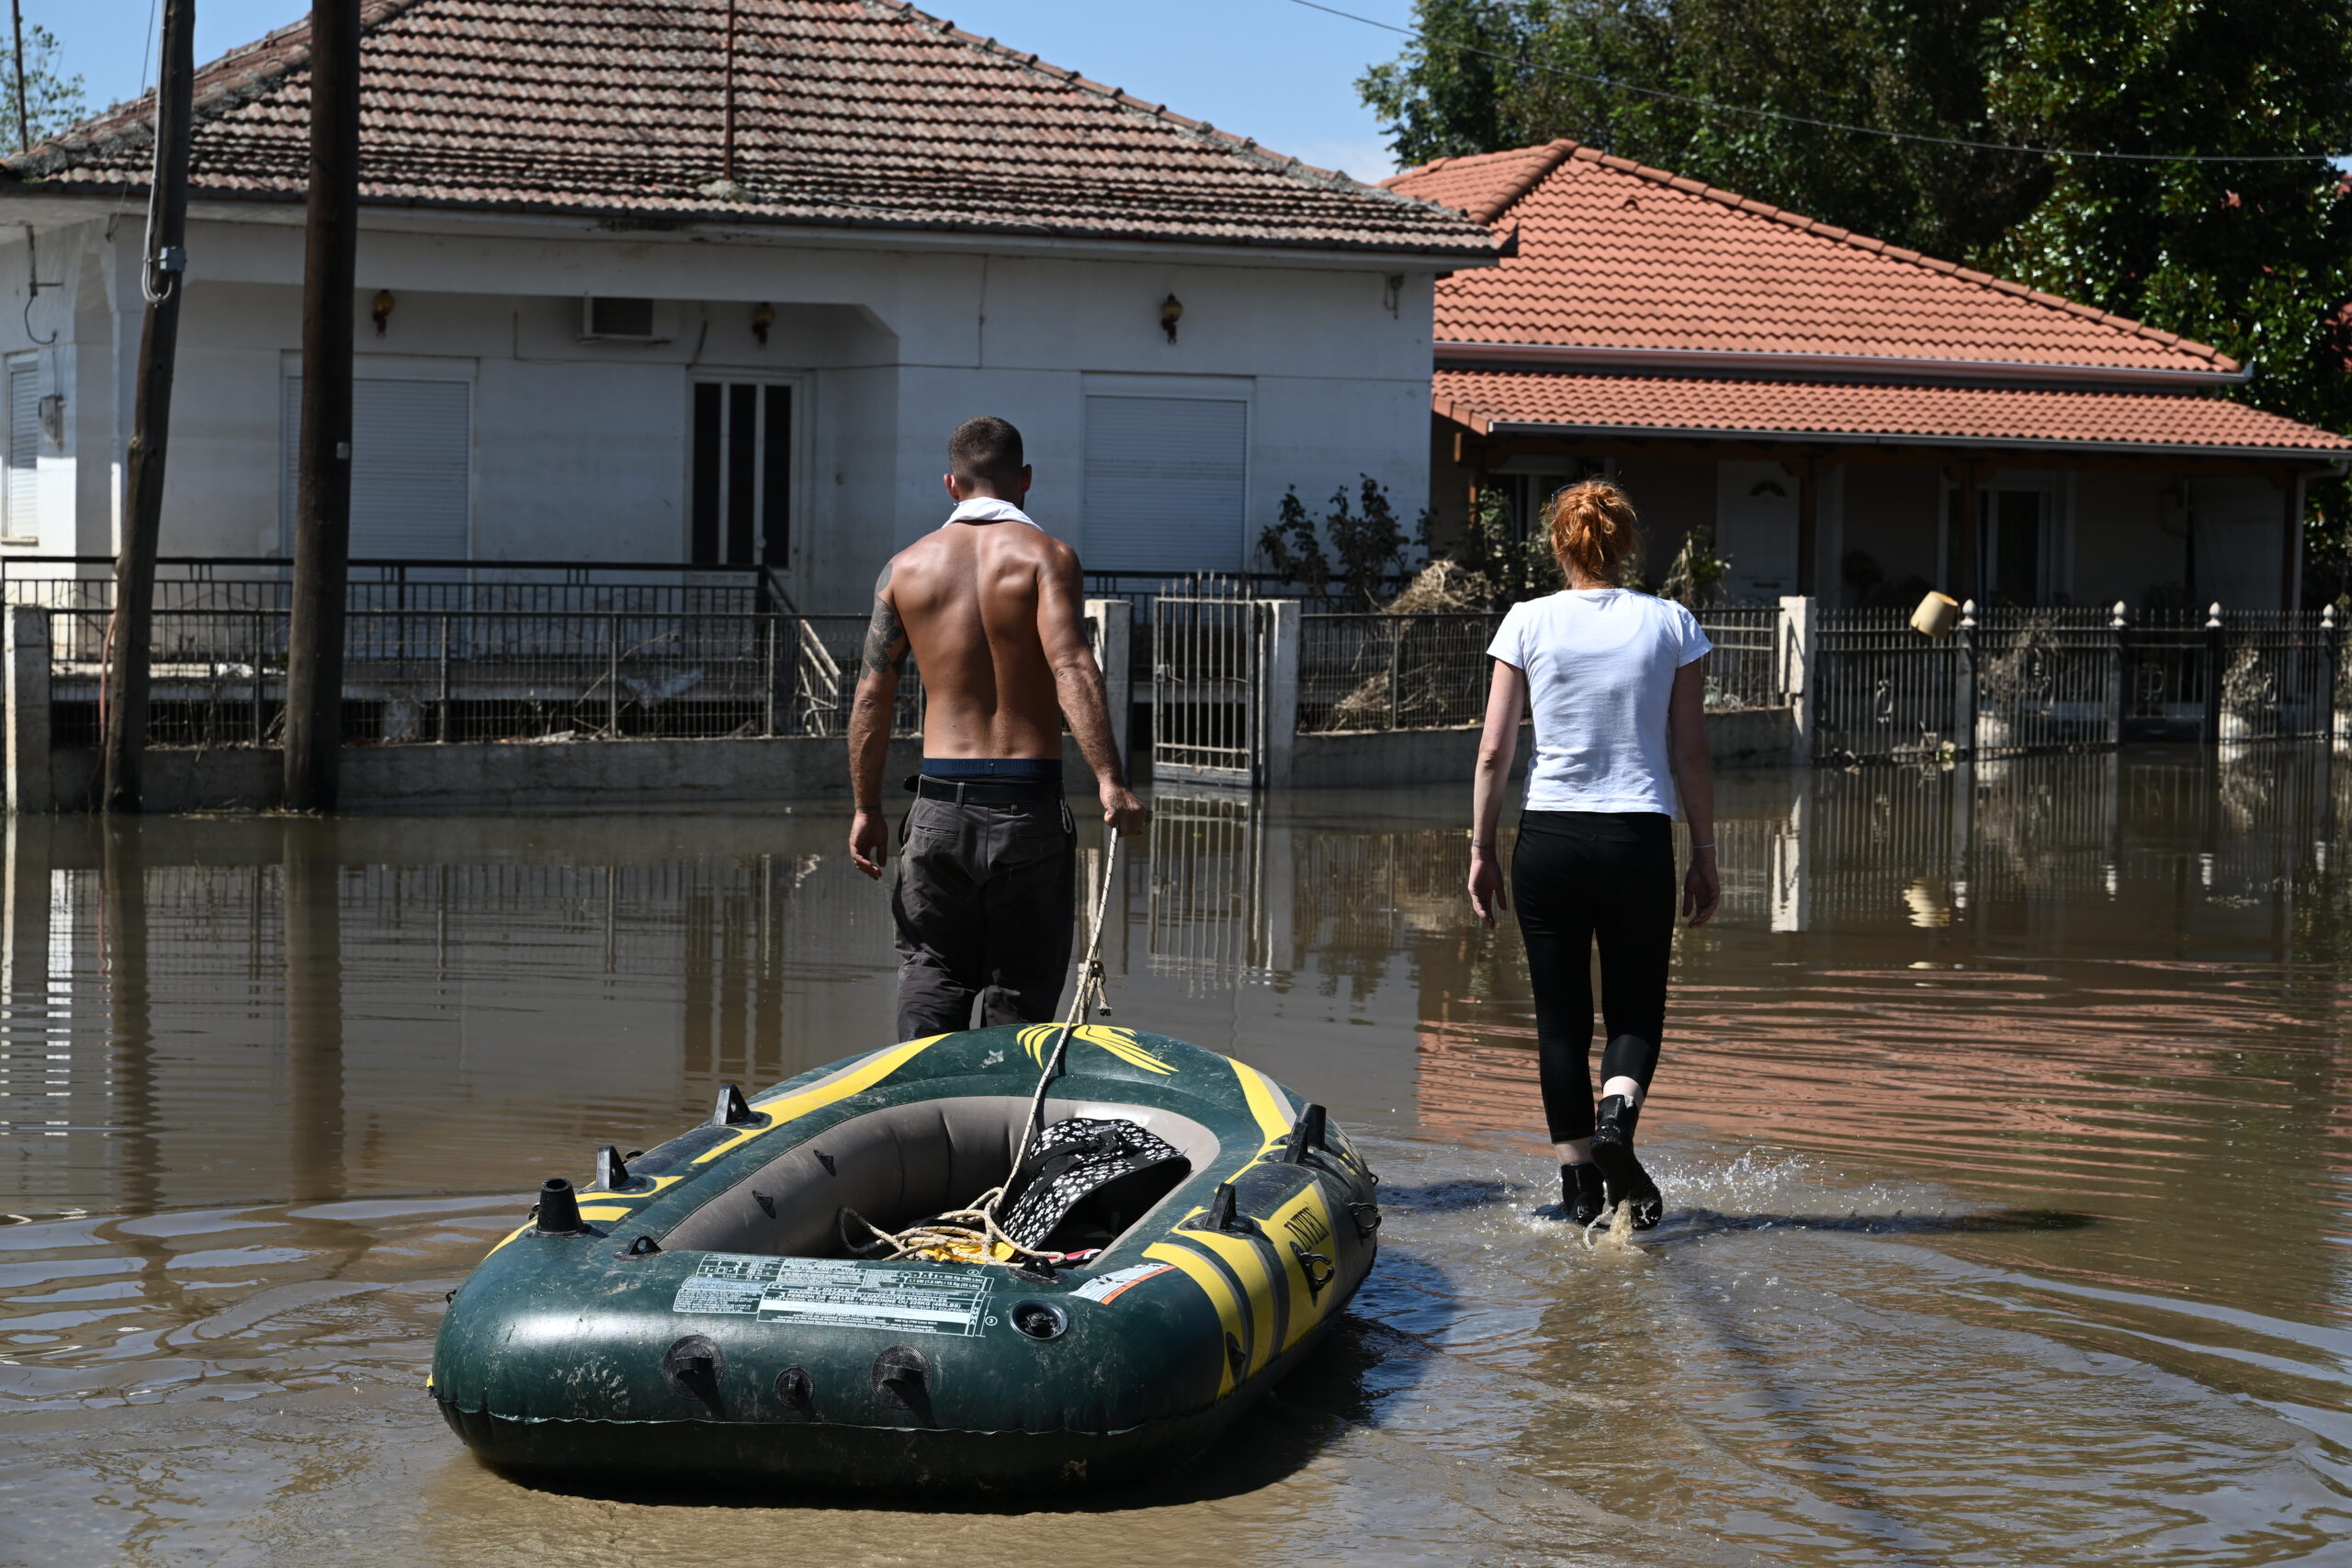 ΓΕΕΘΑ: Σταθμοί συγκέντρωσης εθελοντικής συνεισφοράς από προσωπικό των Ενόπλων Δυνάμεων για τους πληγέντες στη Θεσσαλία